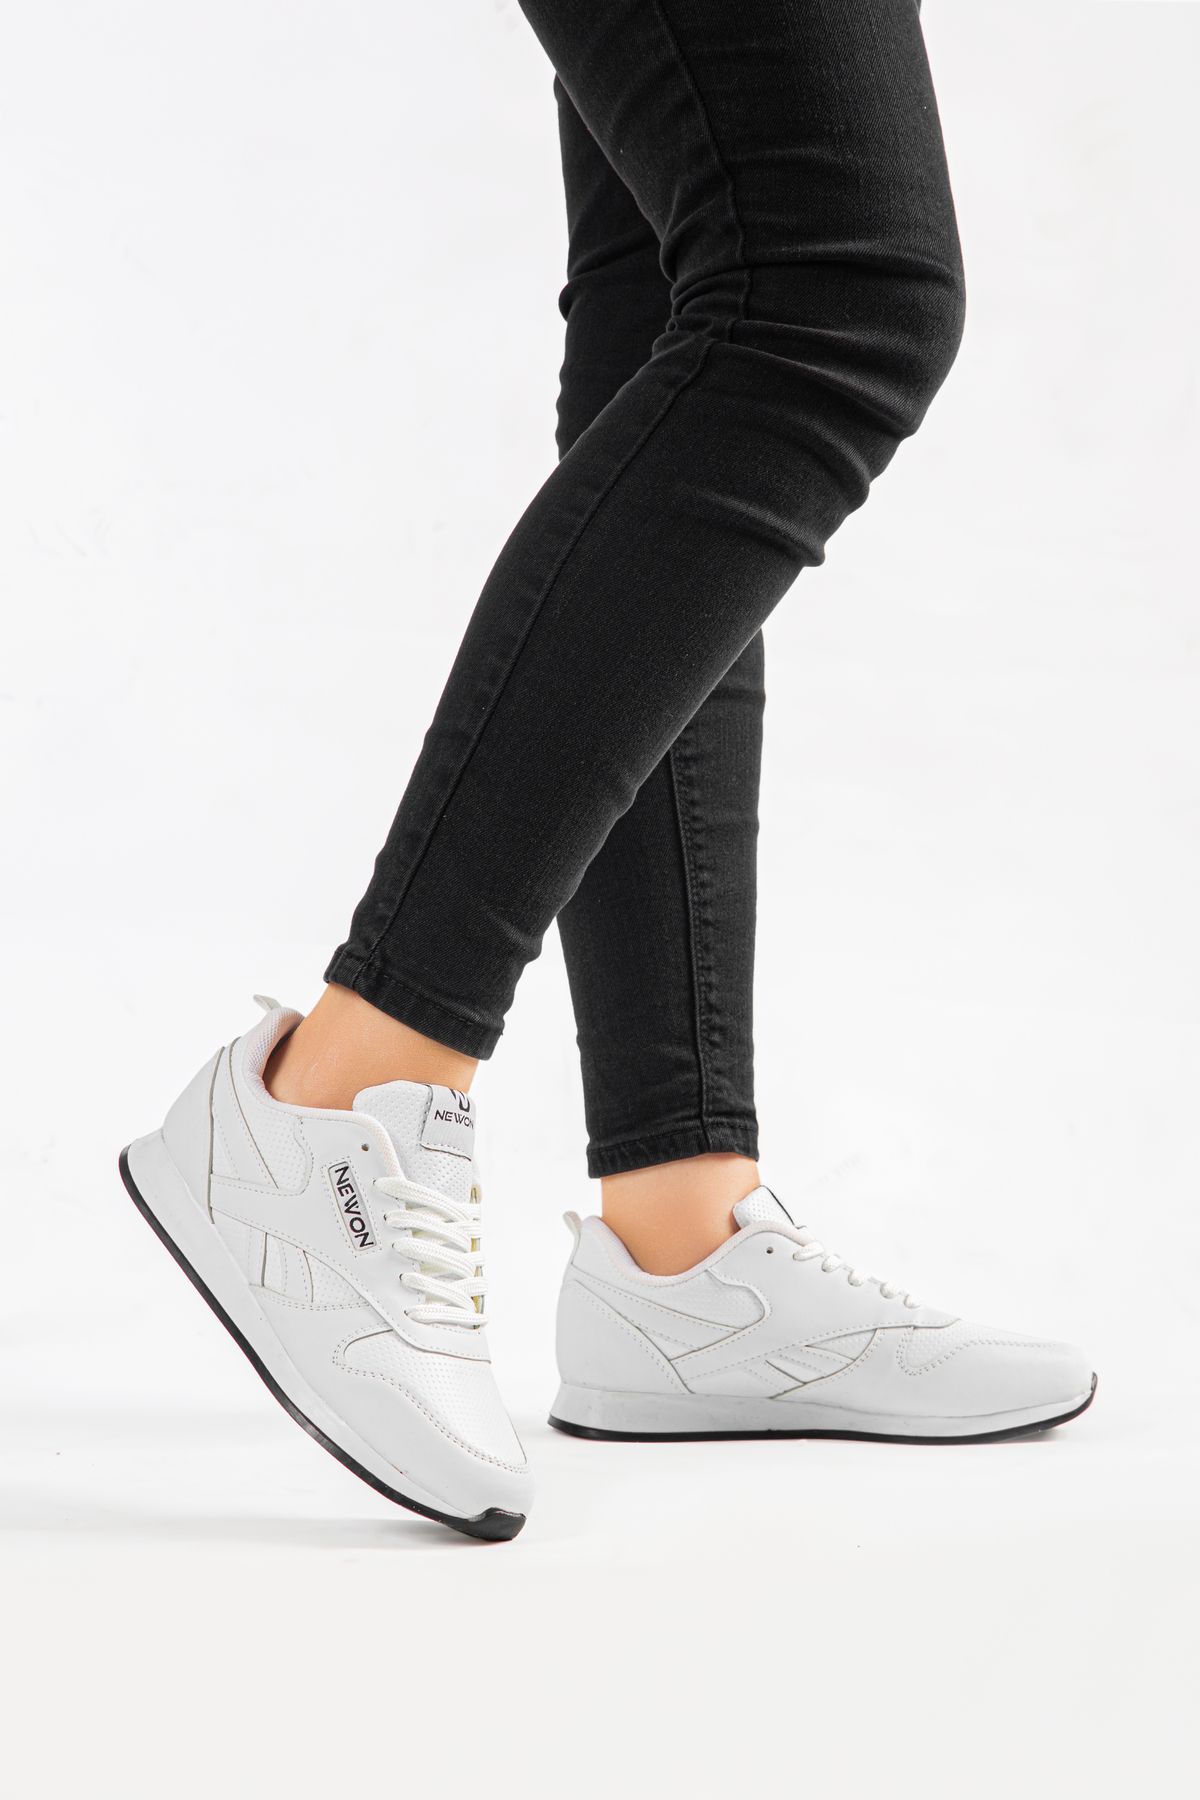 Newon Kadın Bağcıklı Günlük Rahat Taban Şık Tasarım Yürüyüş Casual Sneaker Spor Ayakkabı